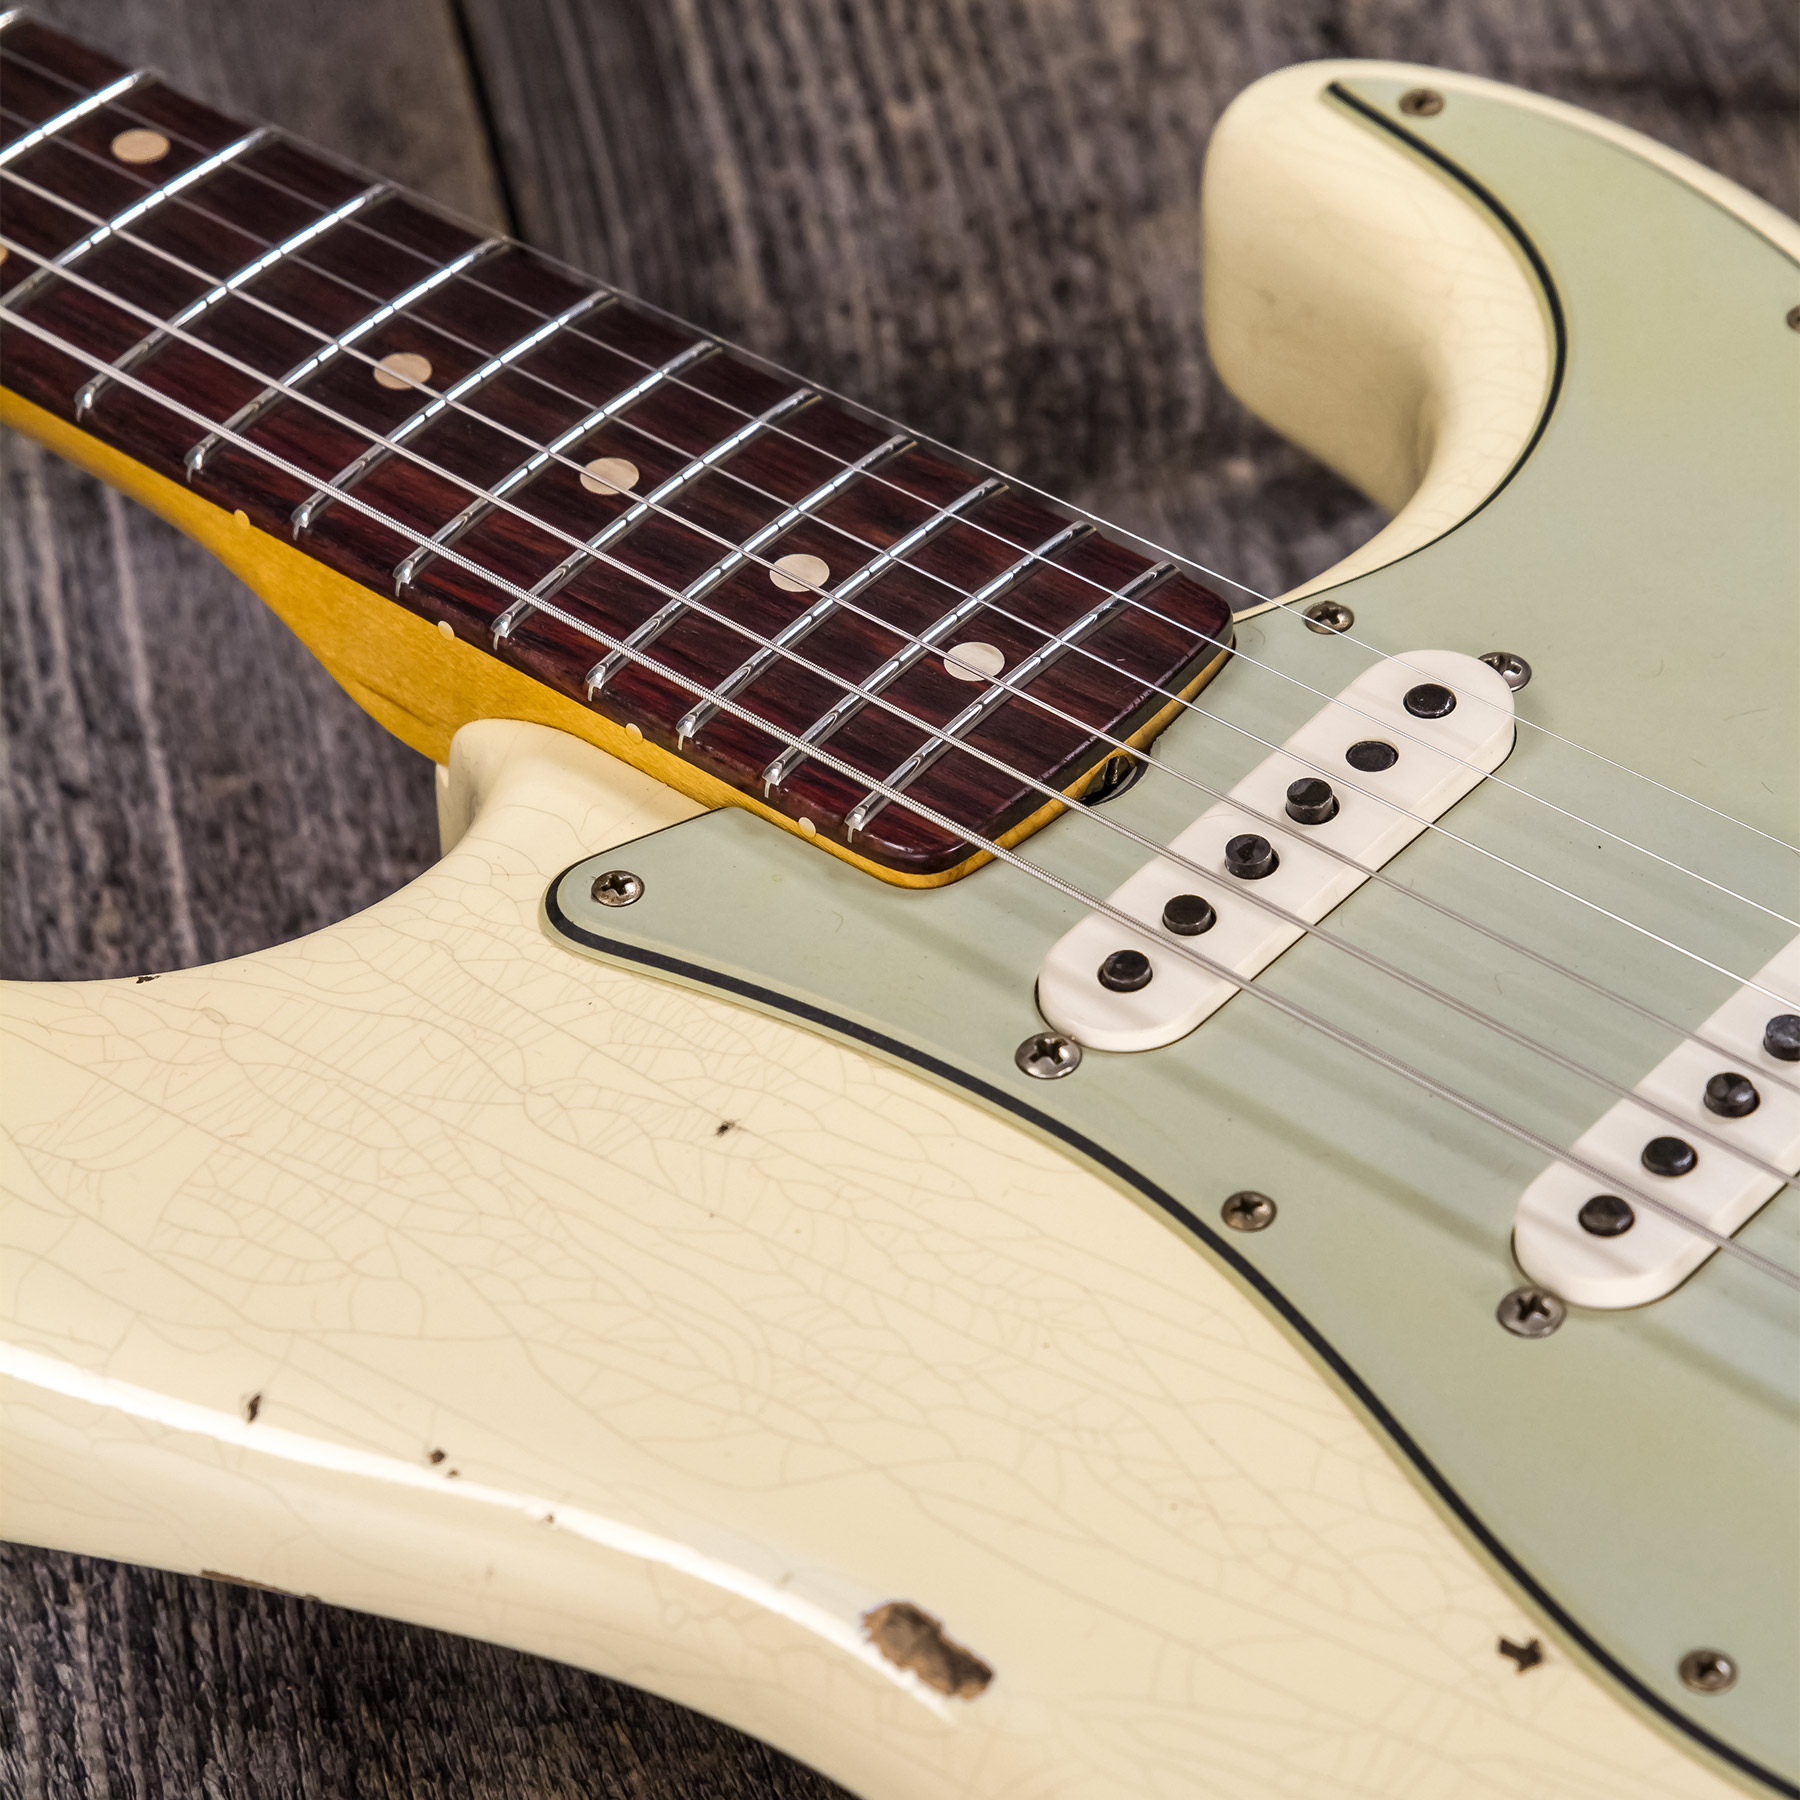 Fender Custom Shop Strat 1959 3s Trem Rw #r117393 - Relic Aged Vintage White - Str shape electric guitar - Variation 7